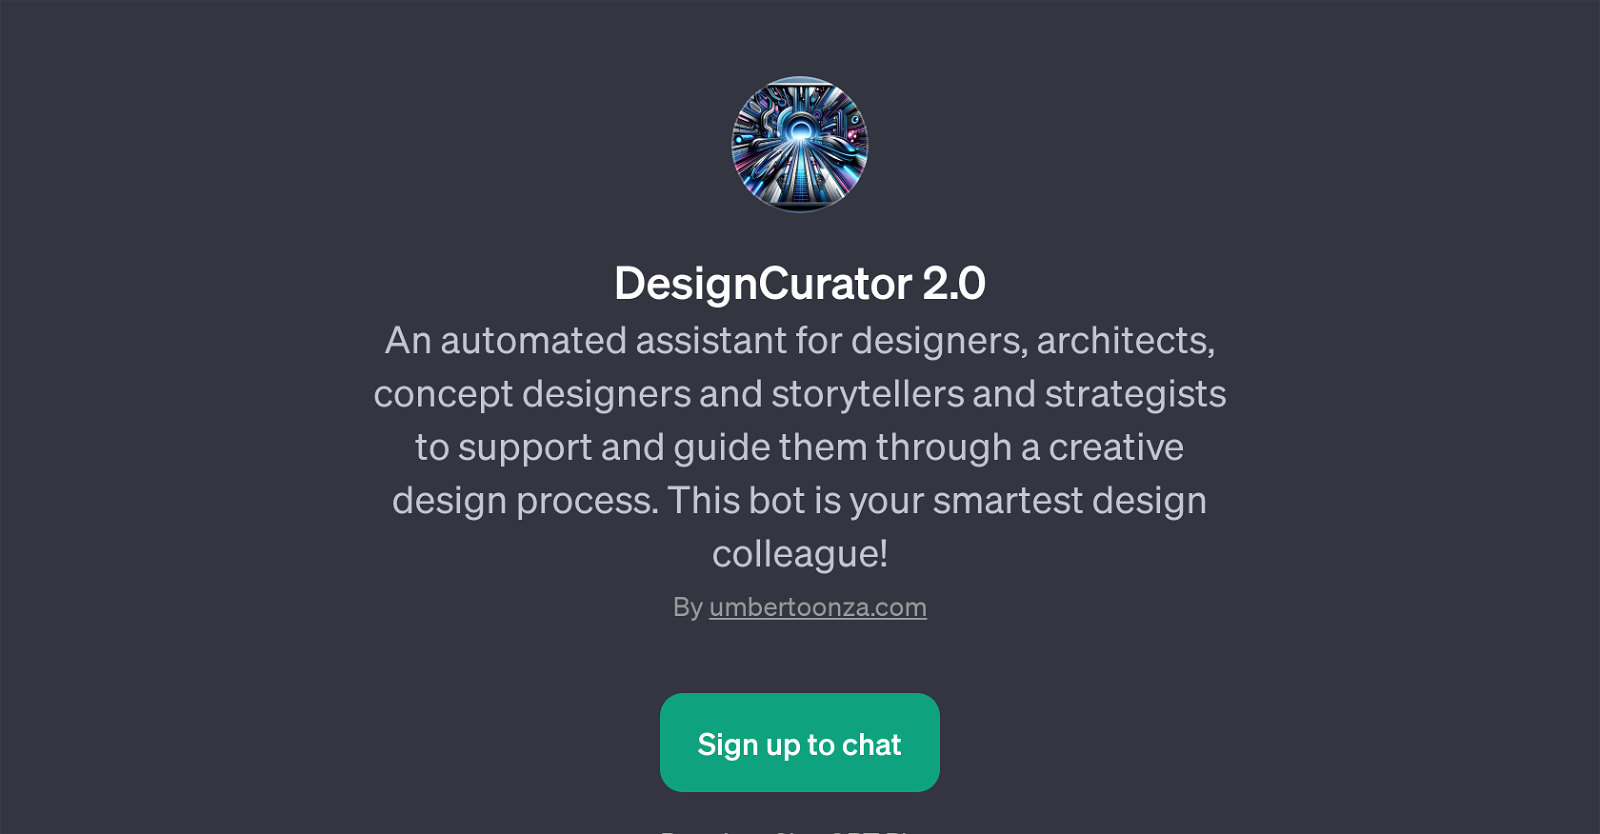 DesignCurator 2.0 website